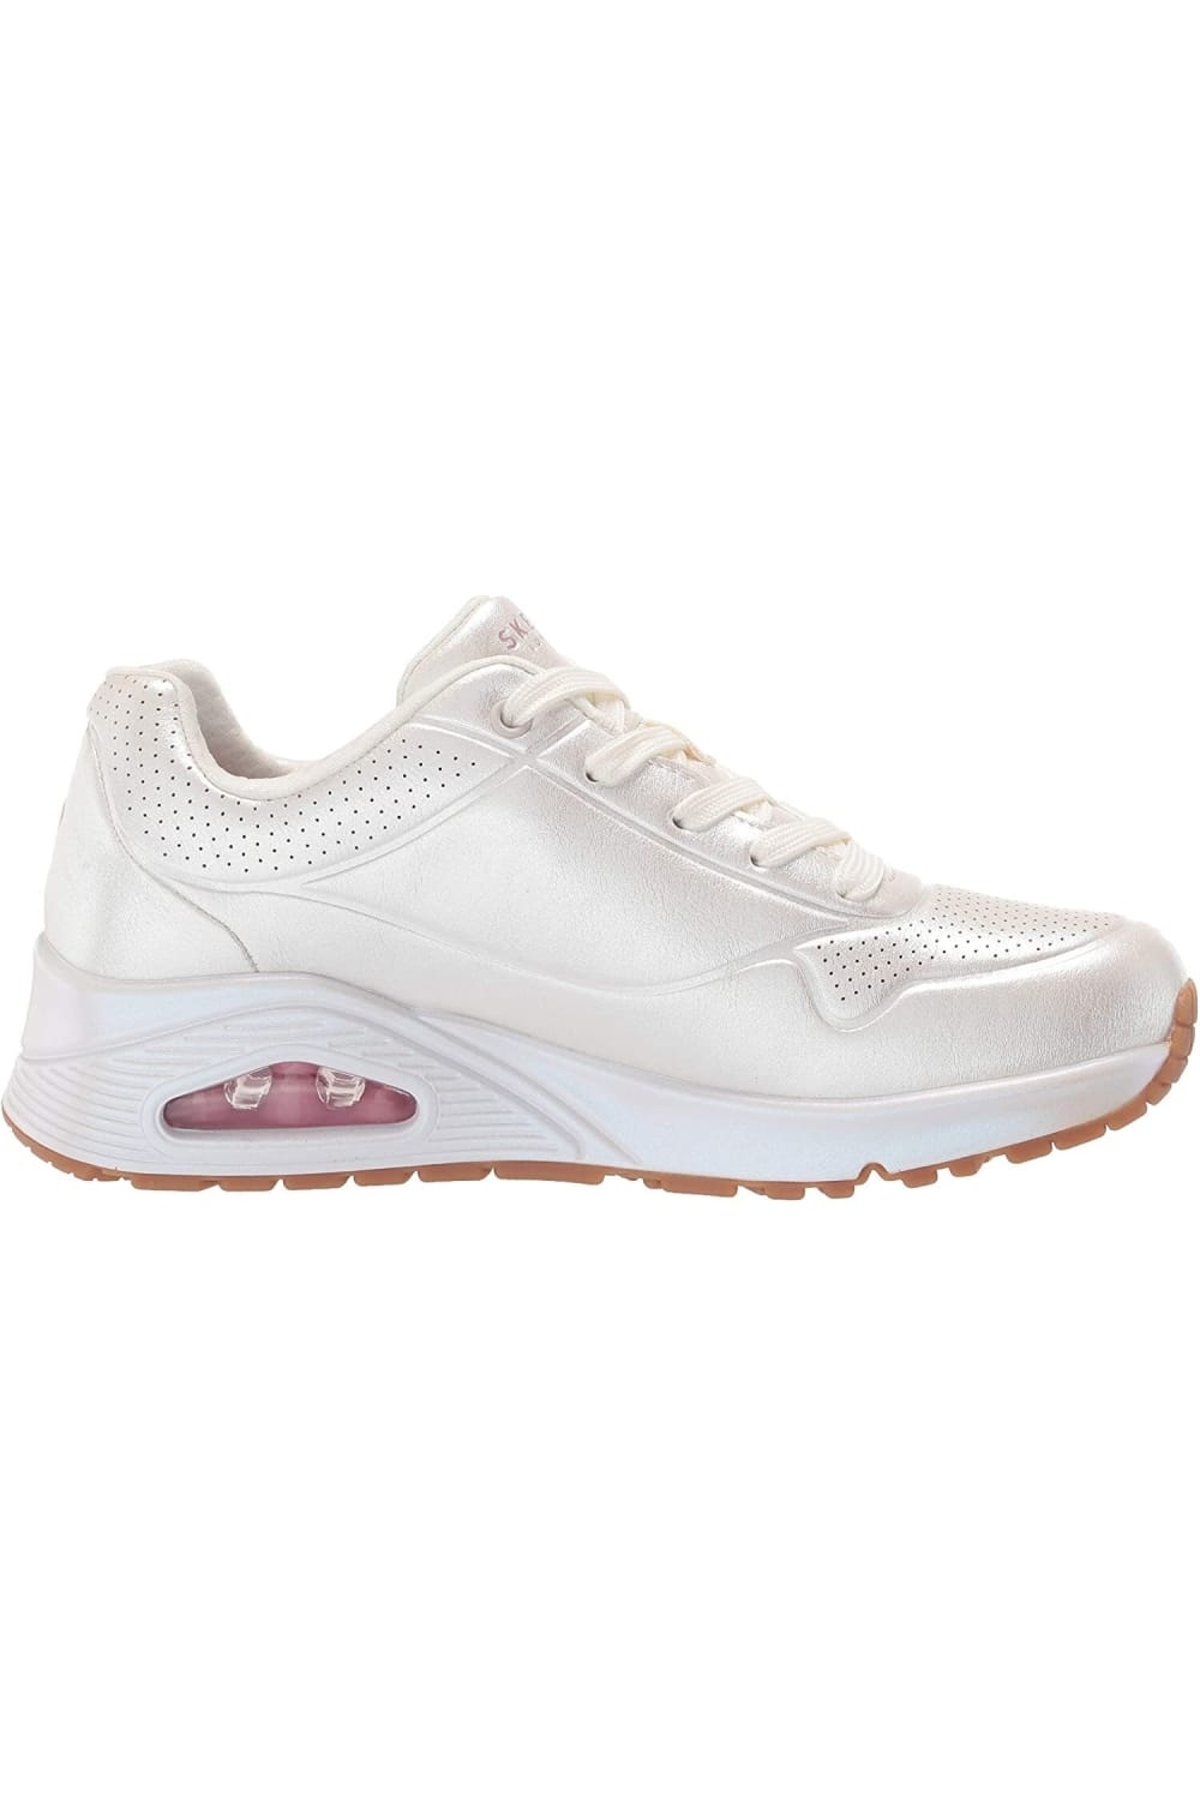 Intiem Heerlijk Feest Skechers White Womens/Ladies Uno Pearl Queen Sneakers (White) | Verishop